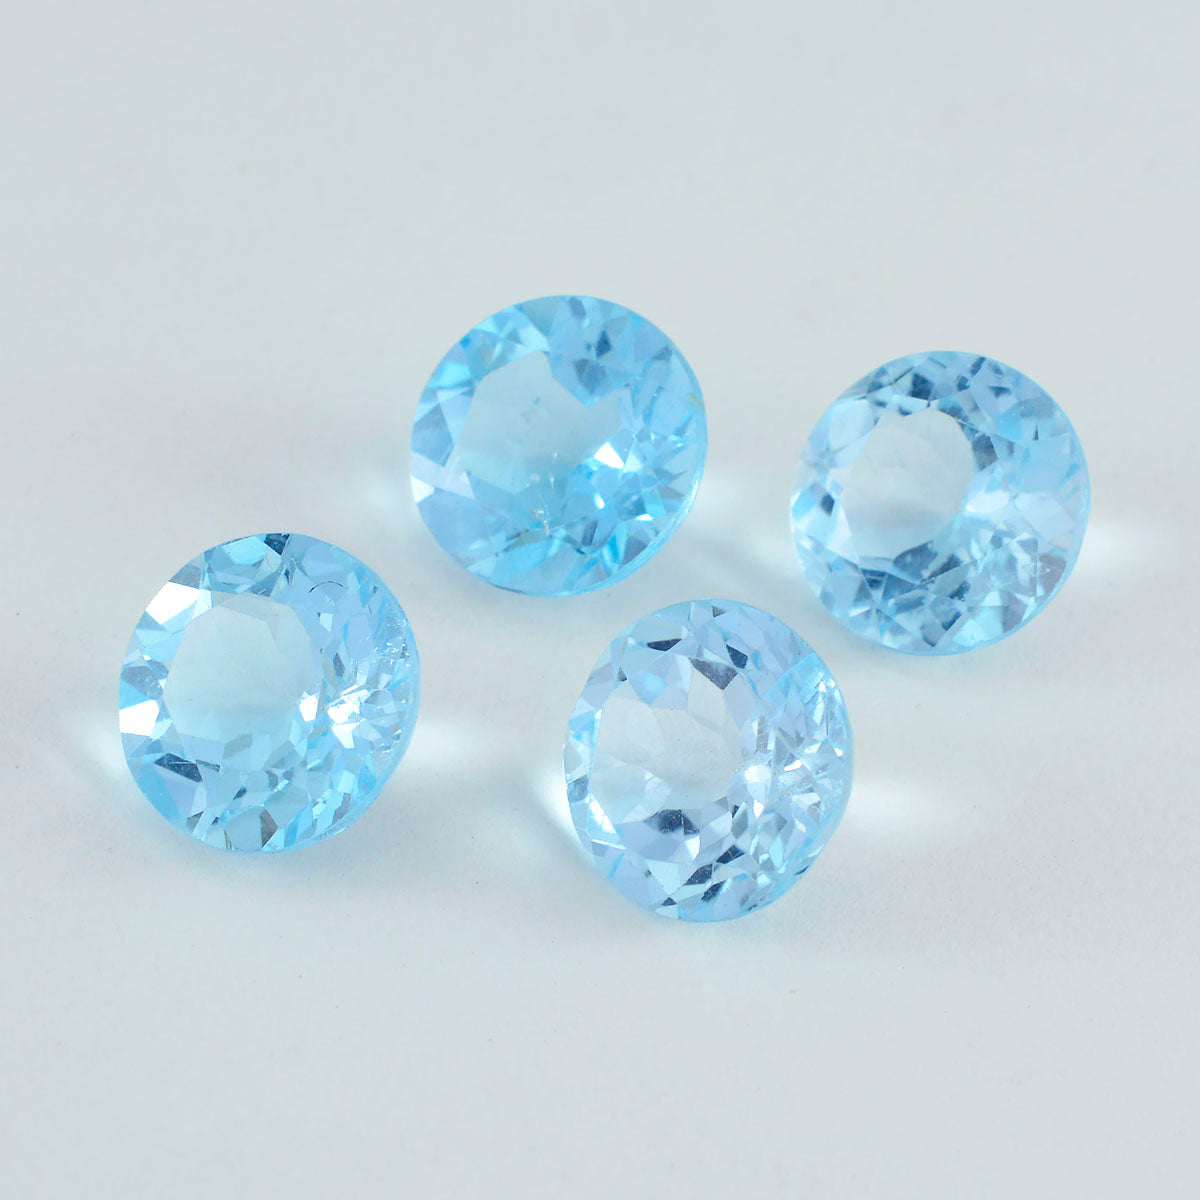 Riyogems 1 pieza de topacio azul natural facetado 13x13 mm forma redonda piedra suelta de calidad A+